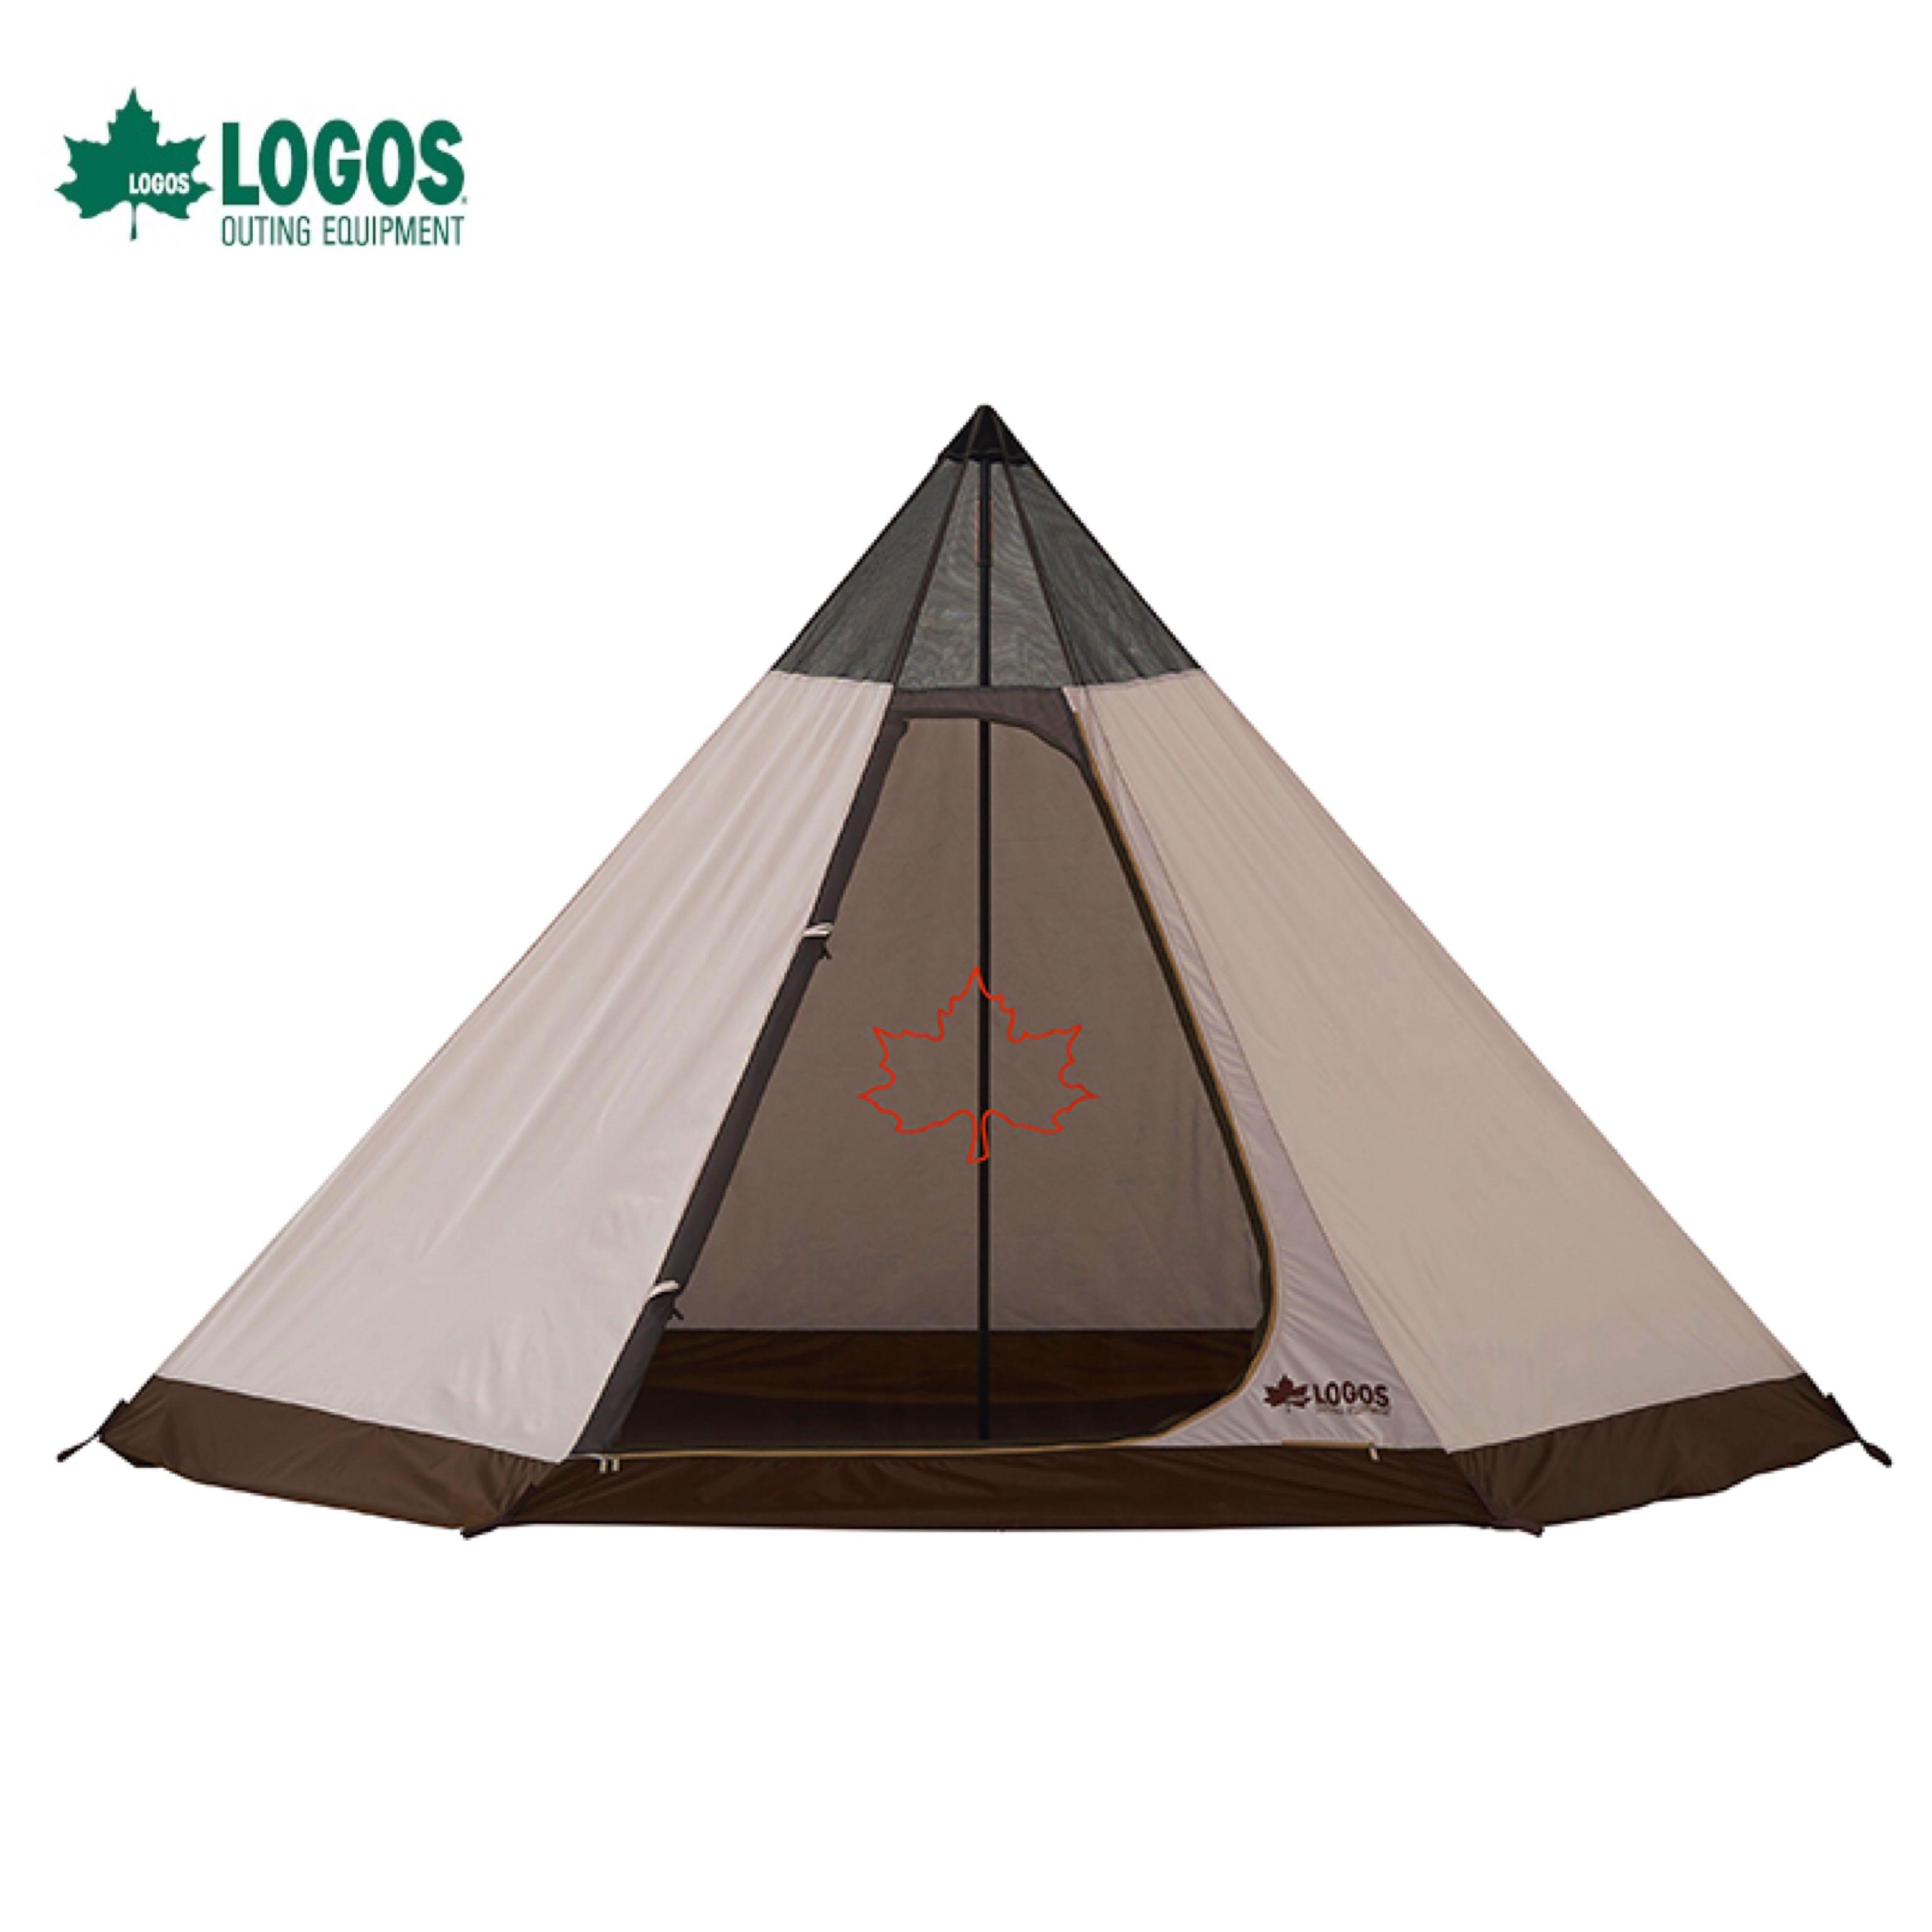 LOGOS Snoopy Tepee Tent 金字塔營86001083 , 運動產品, 行山及露營